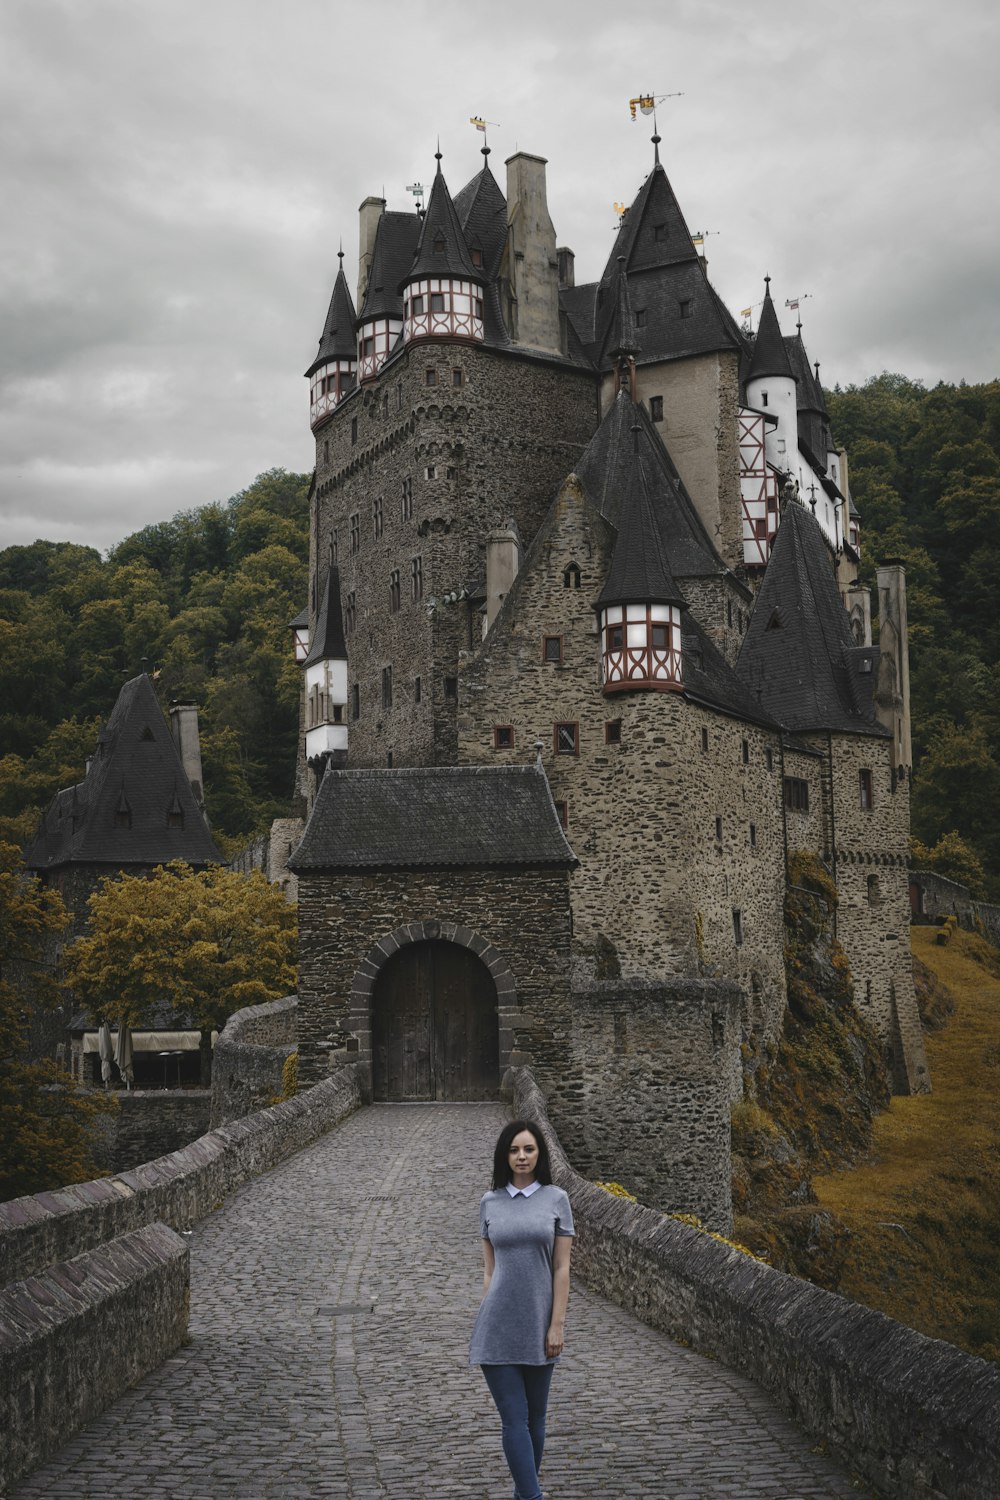 Frau, die in der Nähe der grauen alten Burg spazieren geht, die von hohen und grünen Bäumen umgeben ist